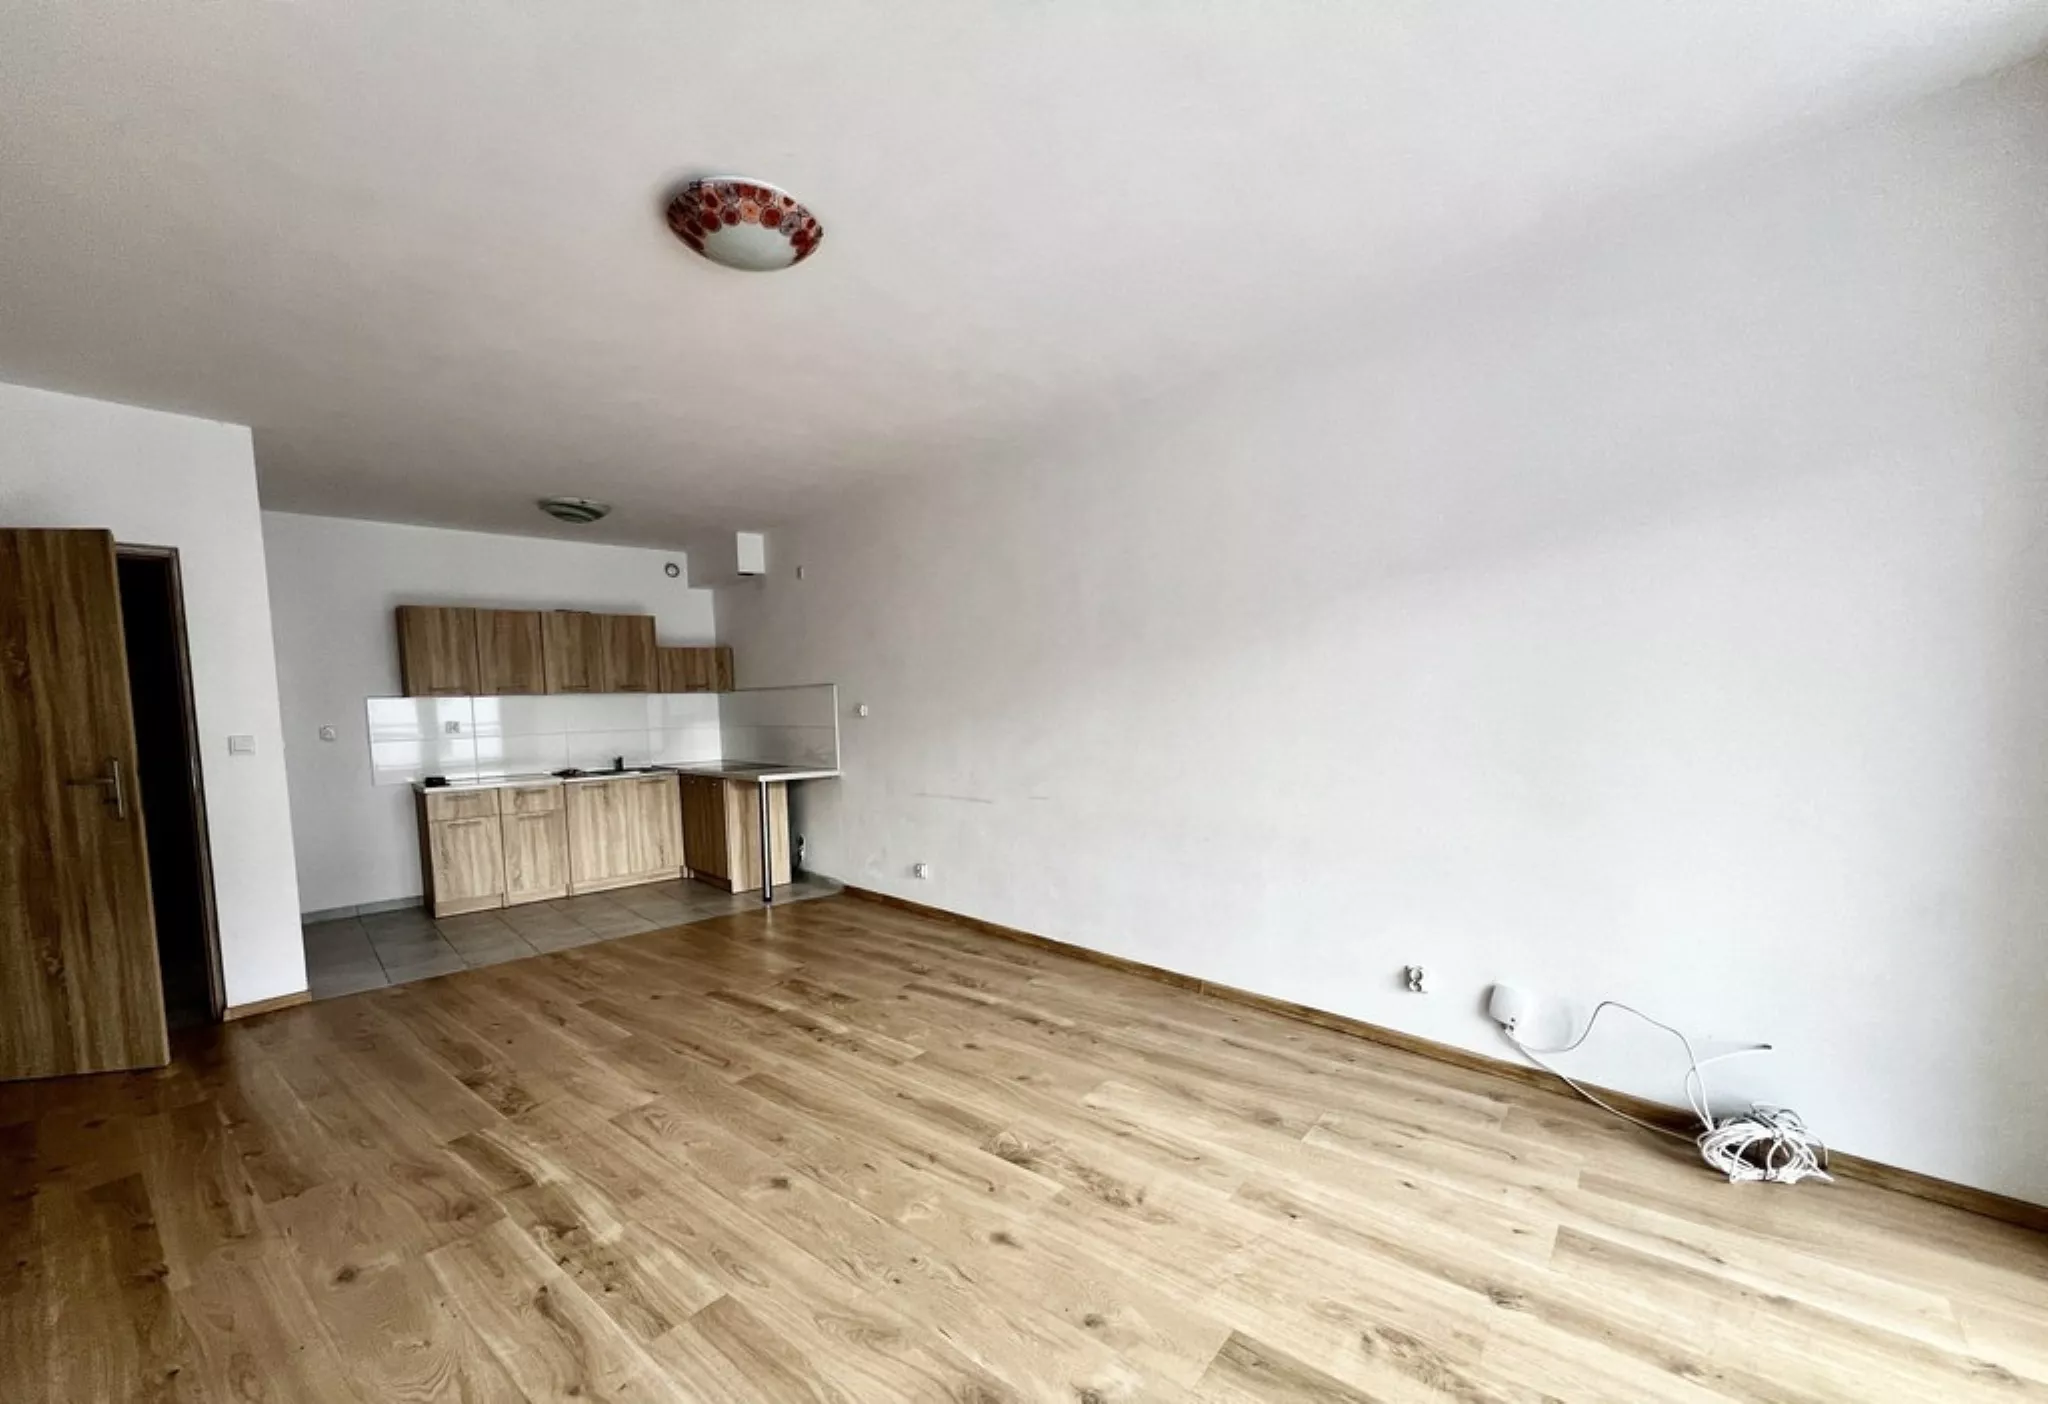 Dębniki, 2 pokoje, mieszkanie sprzedam - Mieszkanie na sprzedaż Kraków